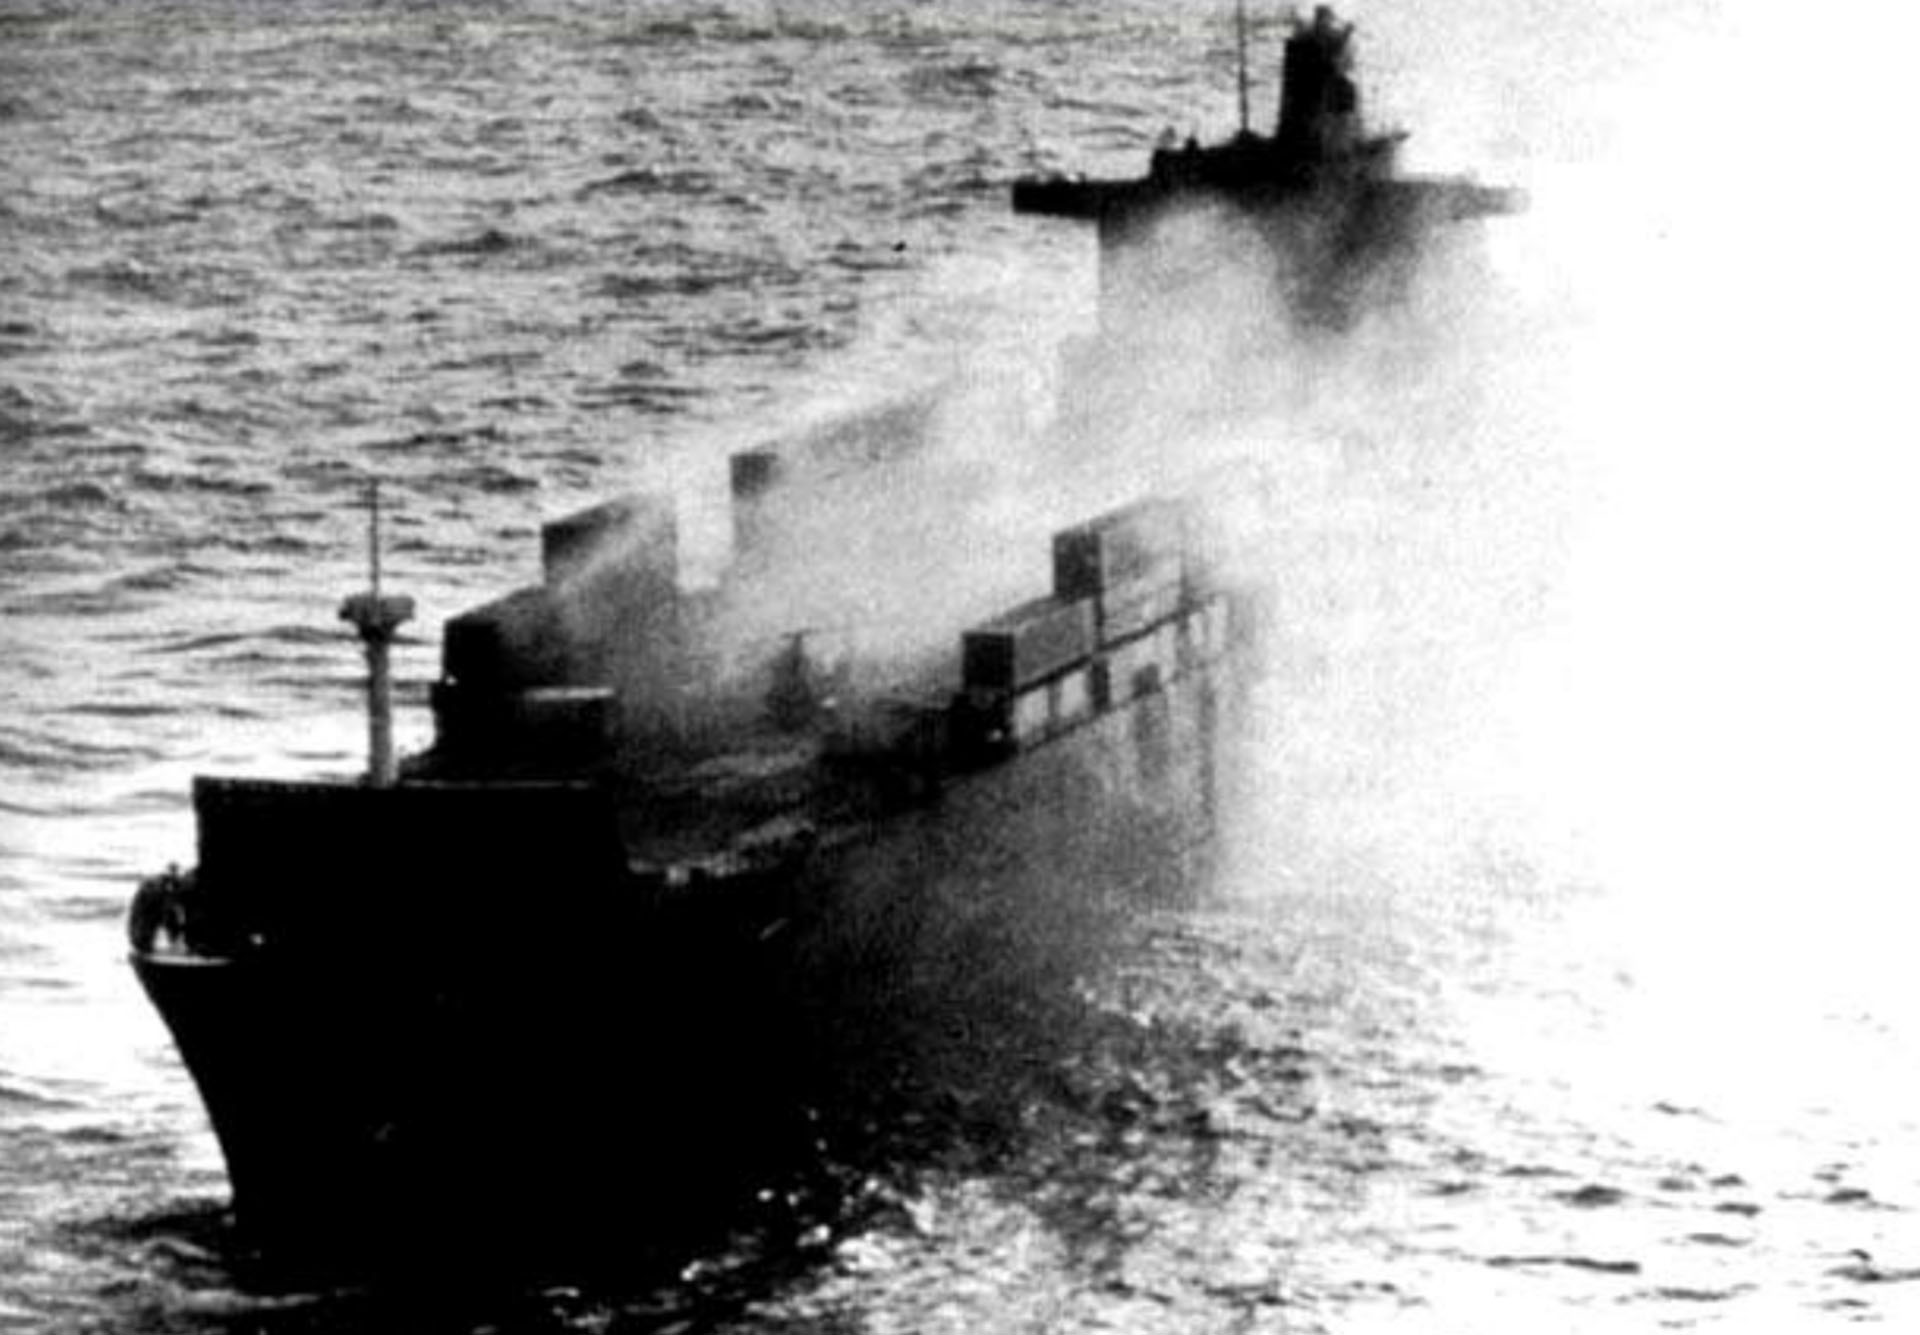 Cuando el Exocet hizo impacto en el Atlantic Conveyor, se desató un incendio y se sucedieron explosiones en su bodega